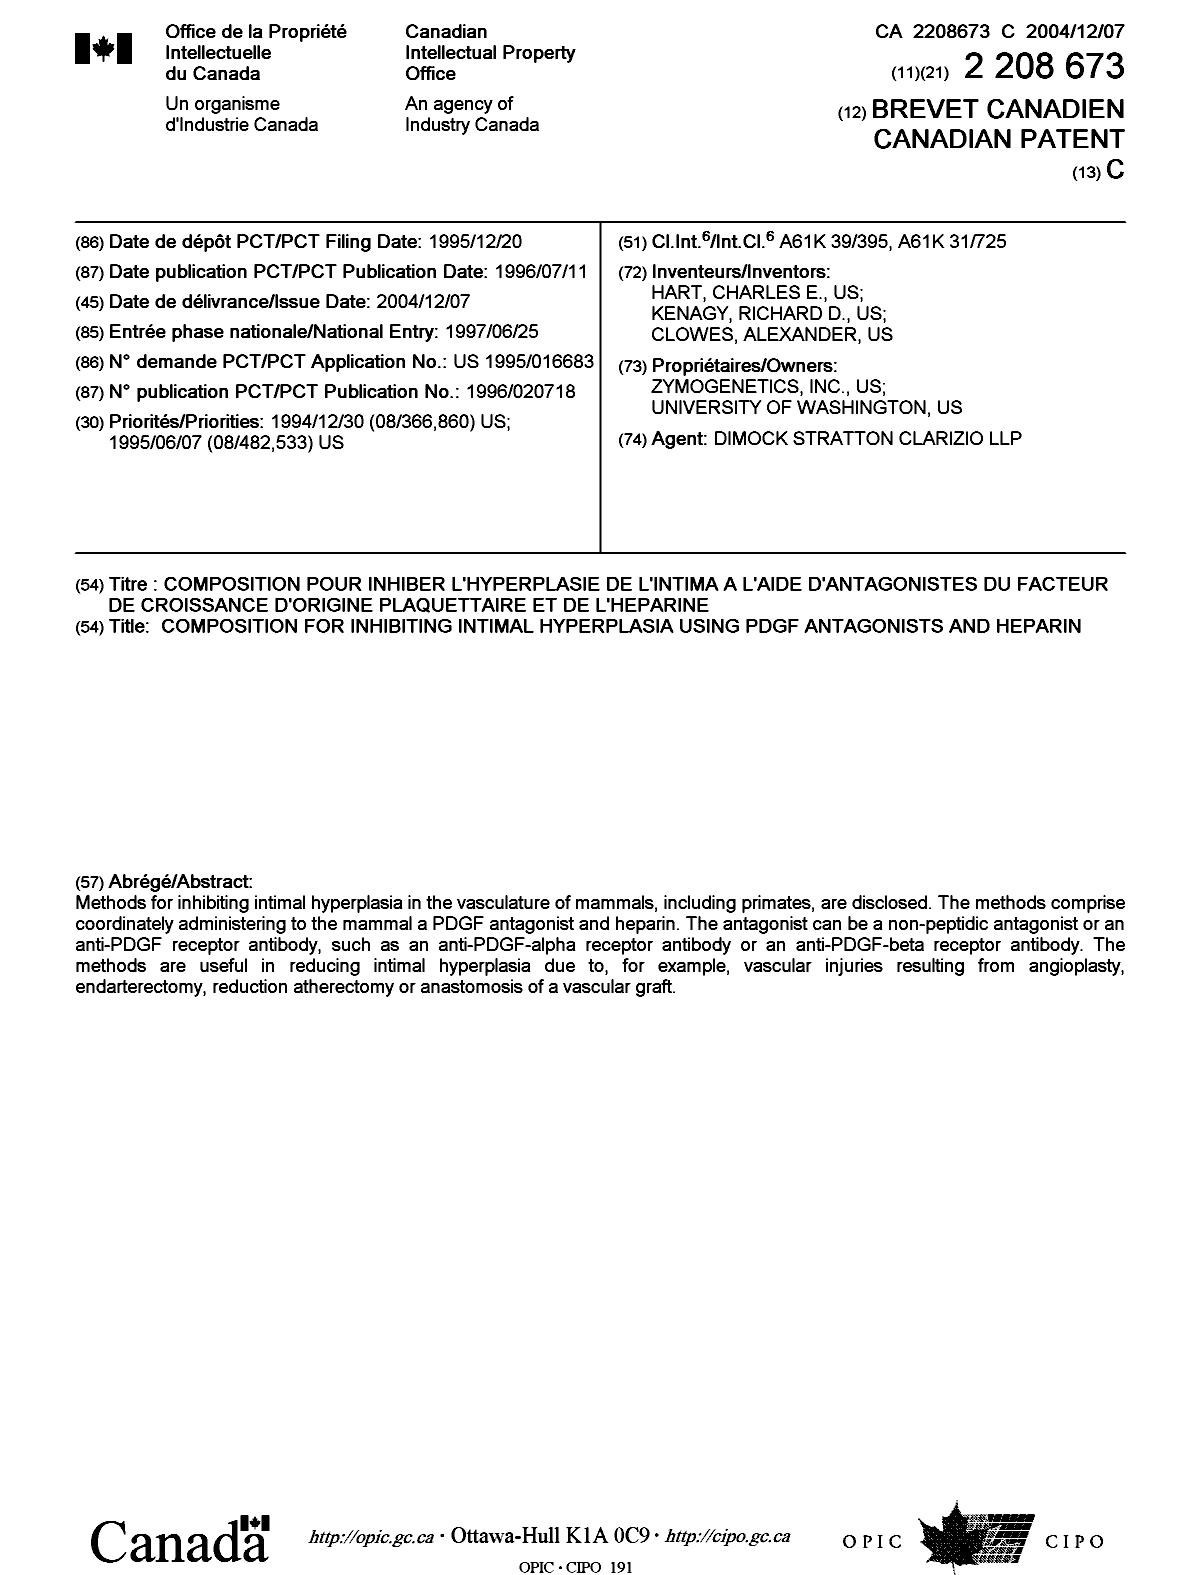 Document de brevet canadien 2208673. Page couverture 20031202. Image 1 de 1